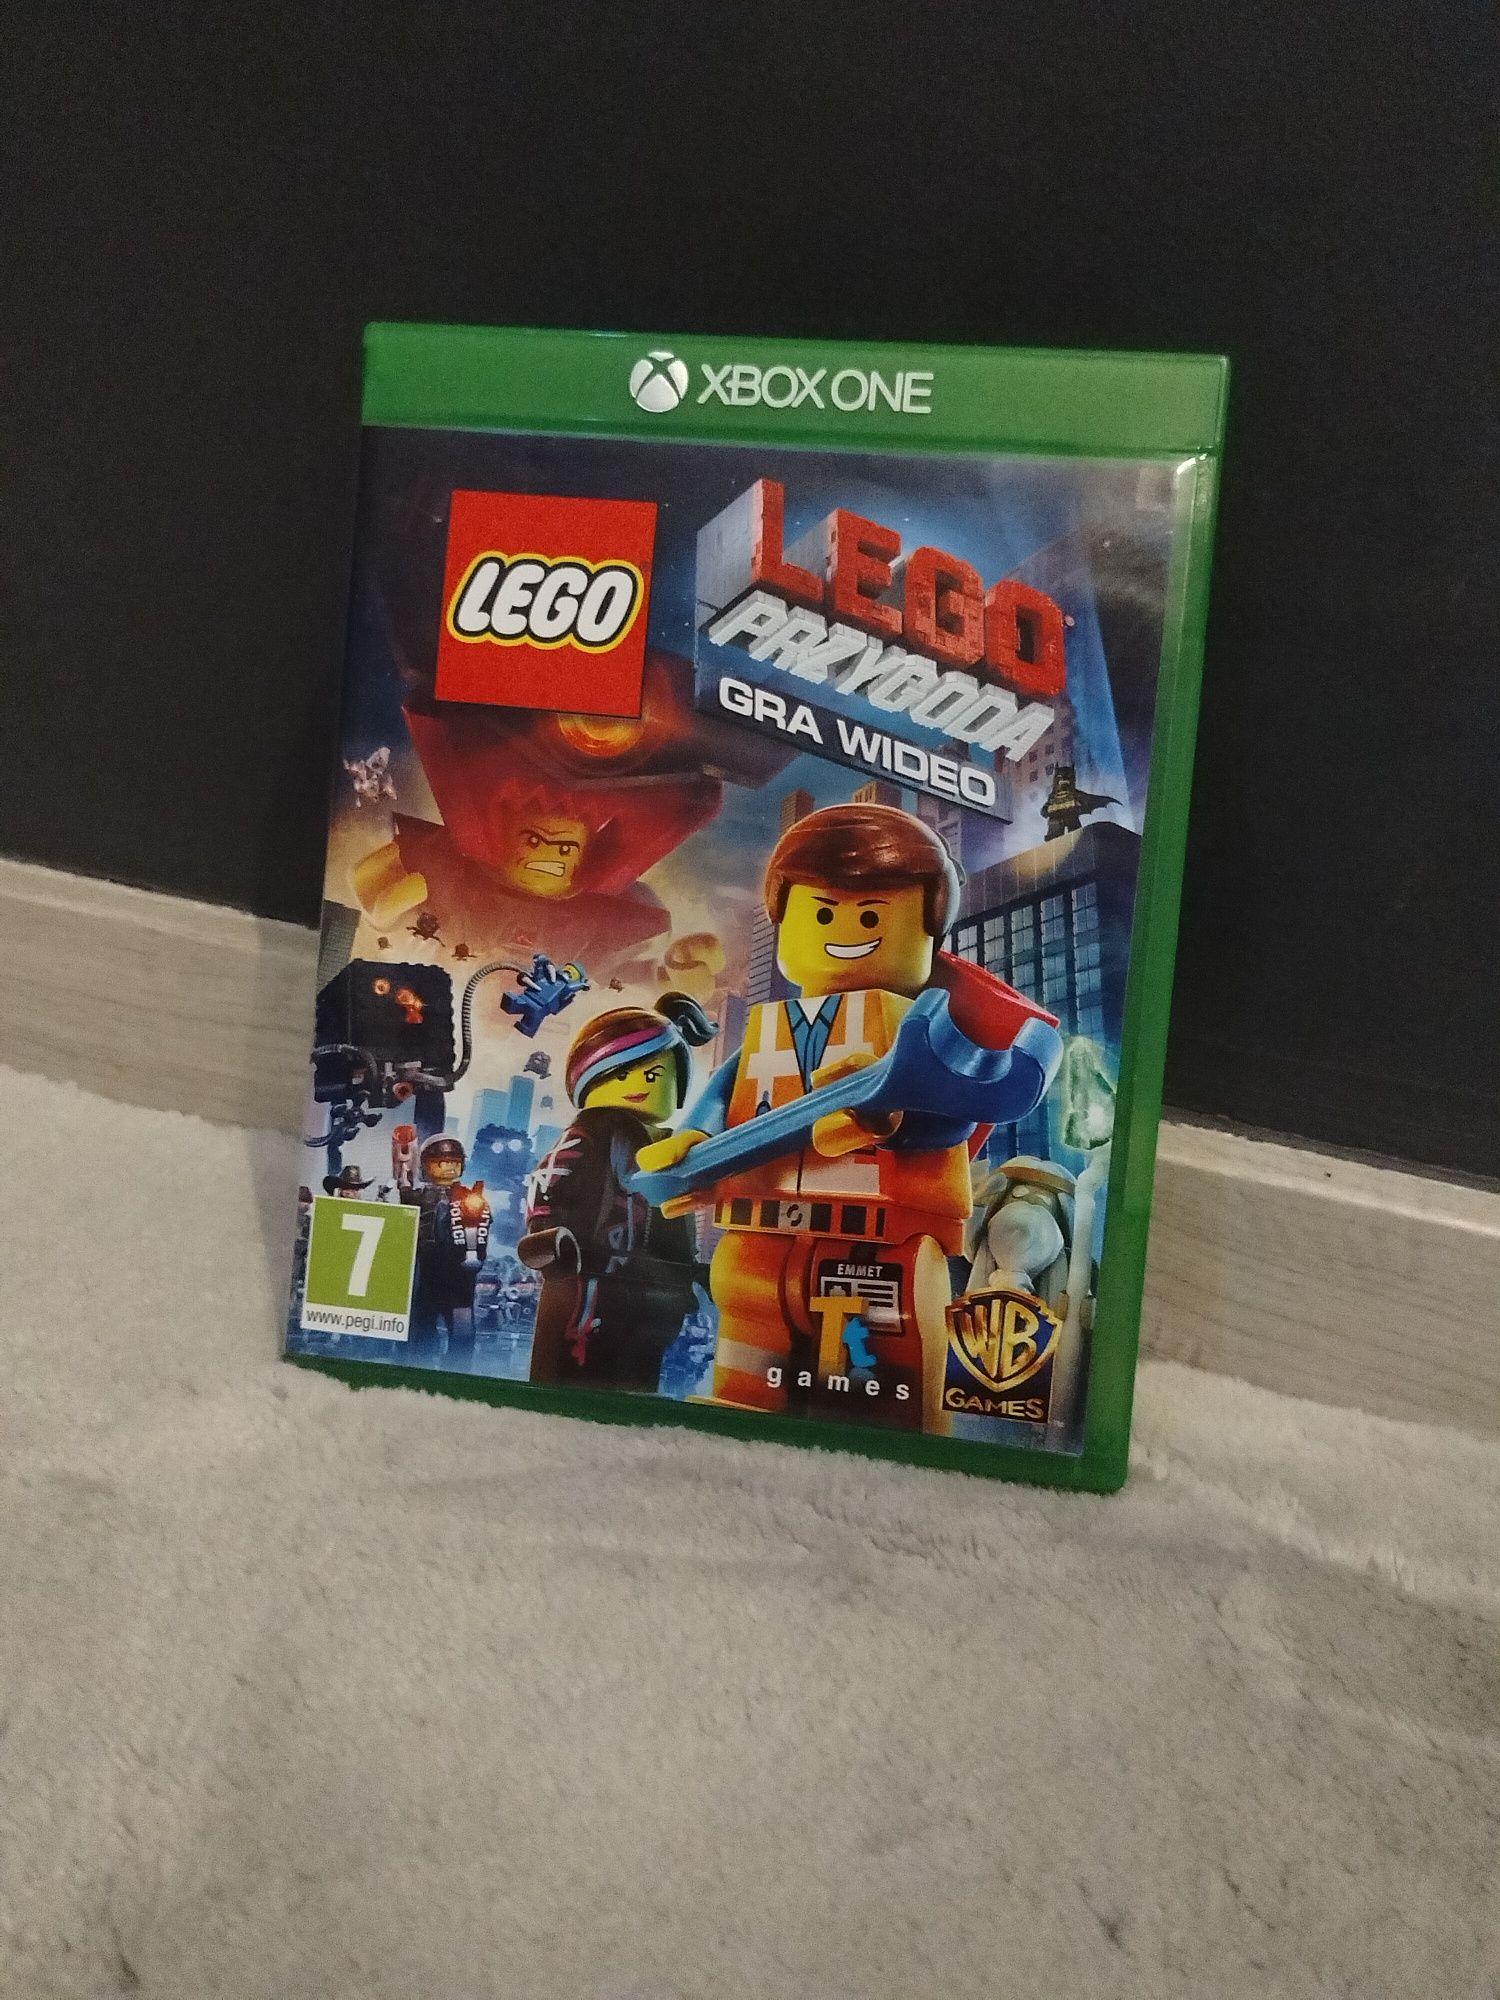 Gra LEGO Przygoda na Xbox One